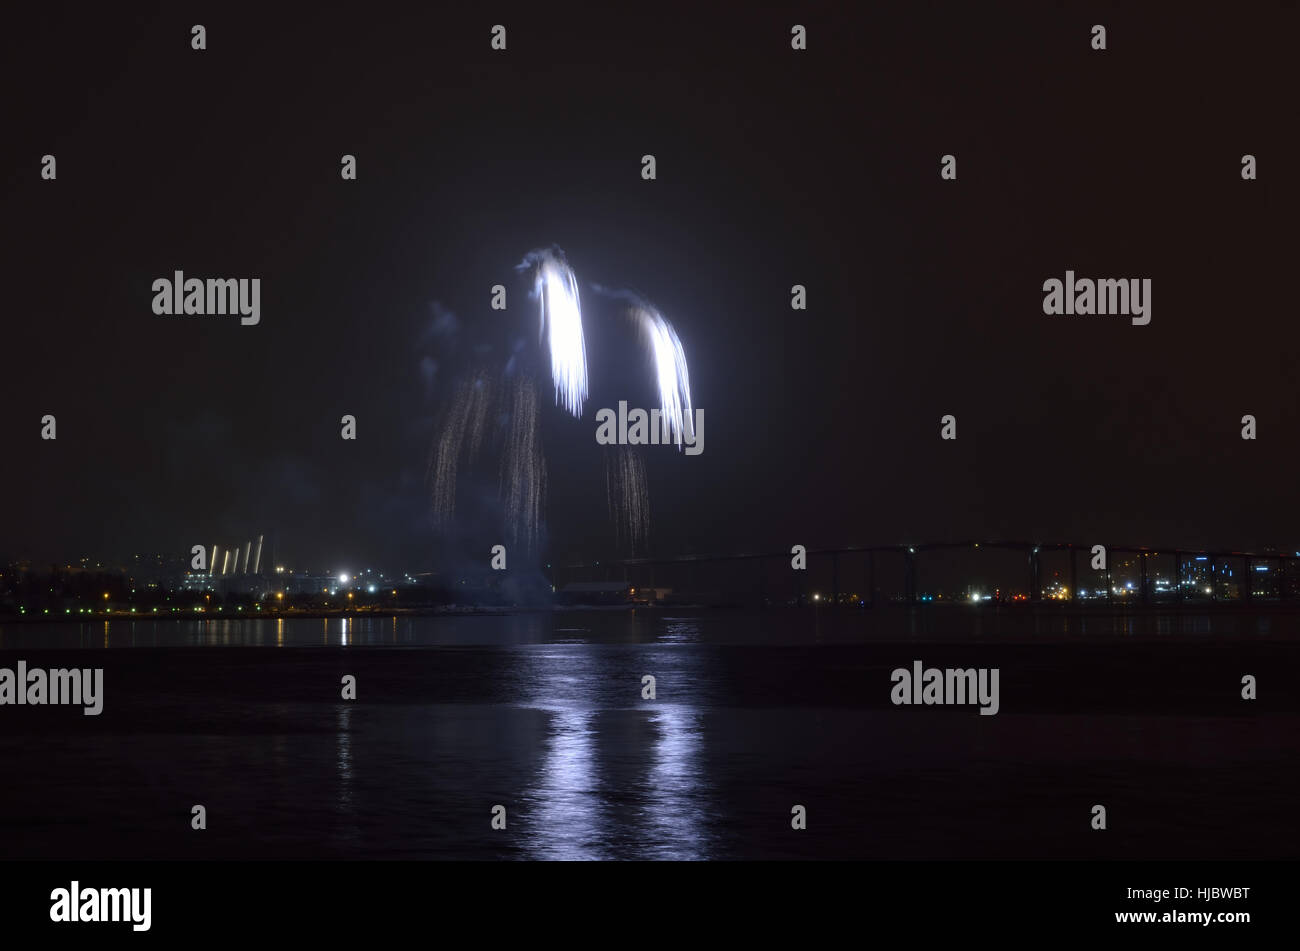 Hermosos fuegos artificiales en el cielo nocturno de la ciudad de tromsoe con puente, catedral y colorido reflejo en el fiordo de superficie de agua fría Foto de stock